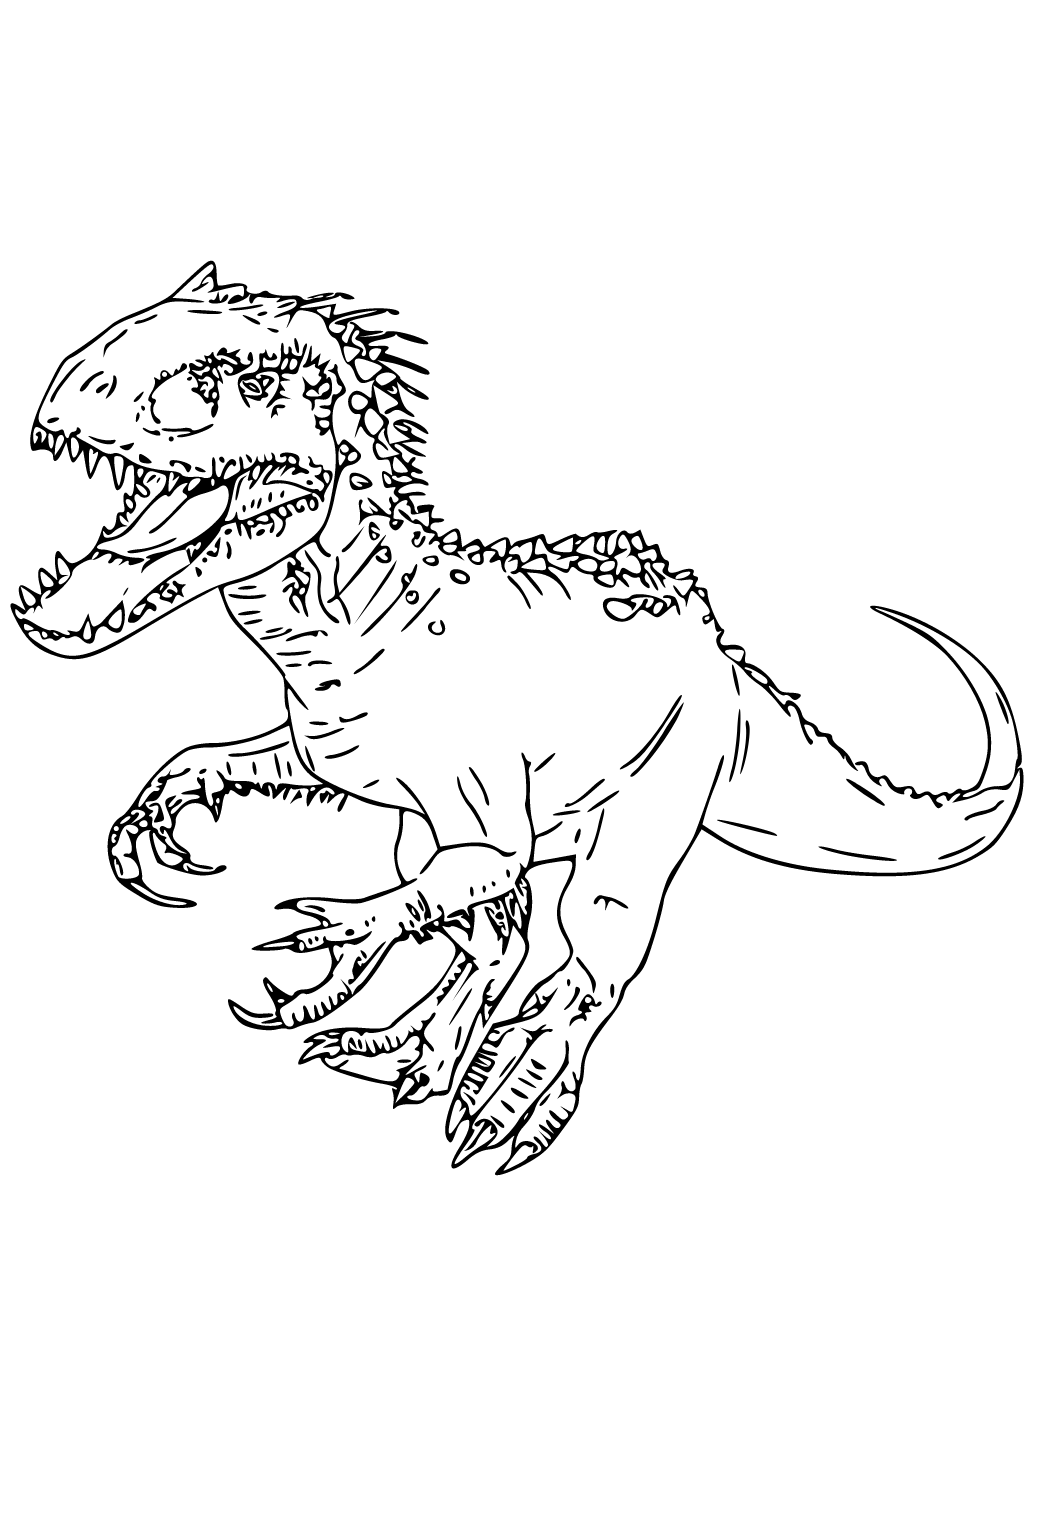 Dibujo e Imagen Jurassic World Dinosaurio para Colorear y Imprimir Gratis  para Adultos, Niñas y Niños 